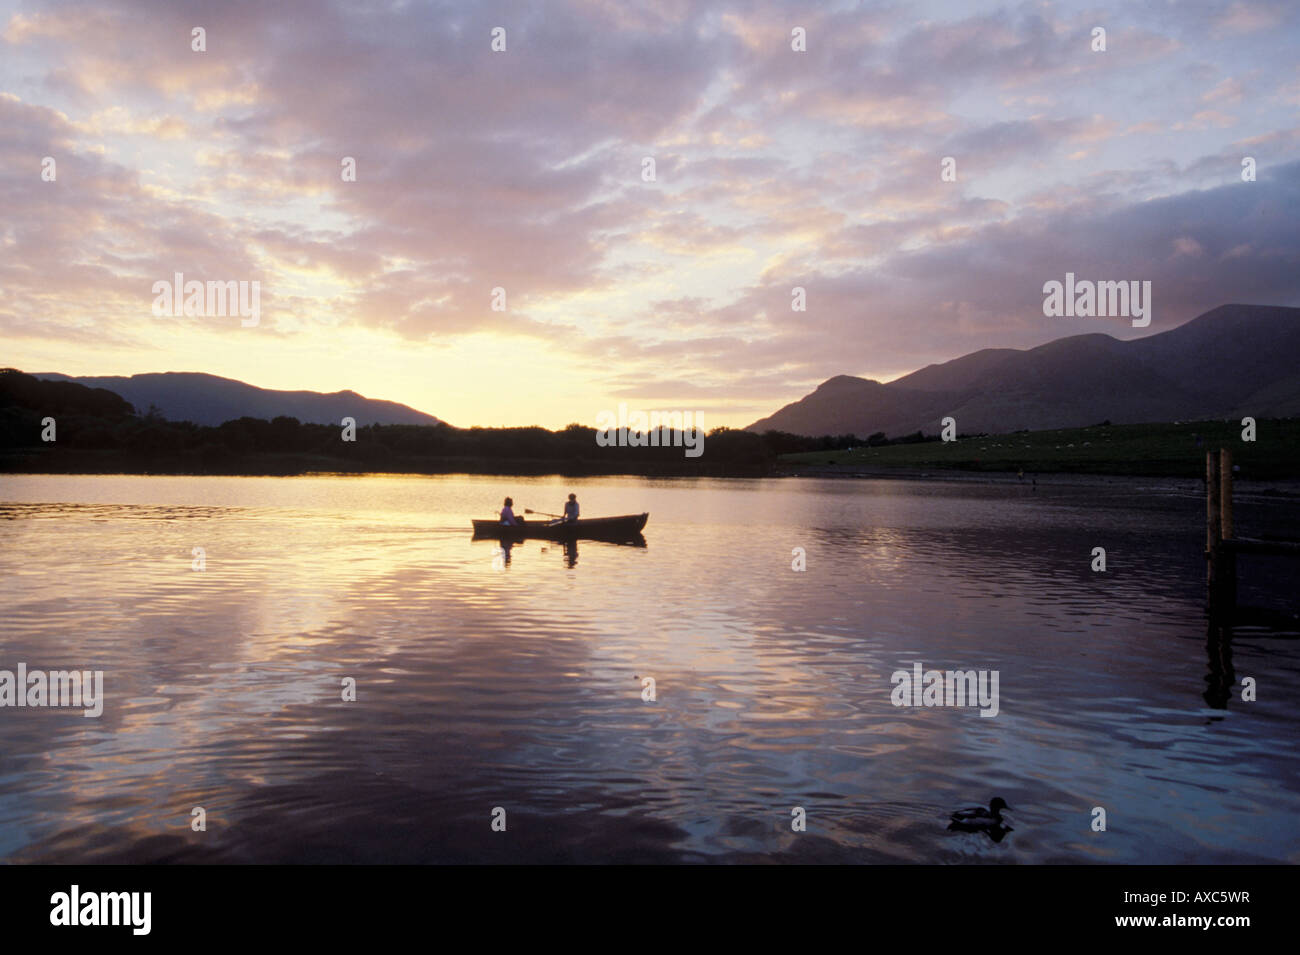 Deux personnes pédalo sur l'eau calme au crépuscule, Lake District, UK Banque D'Images